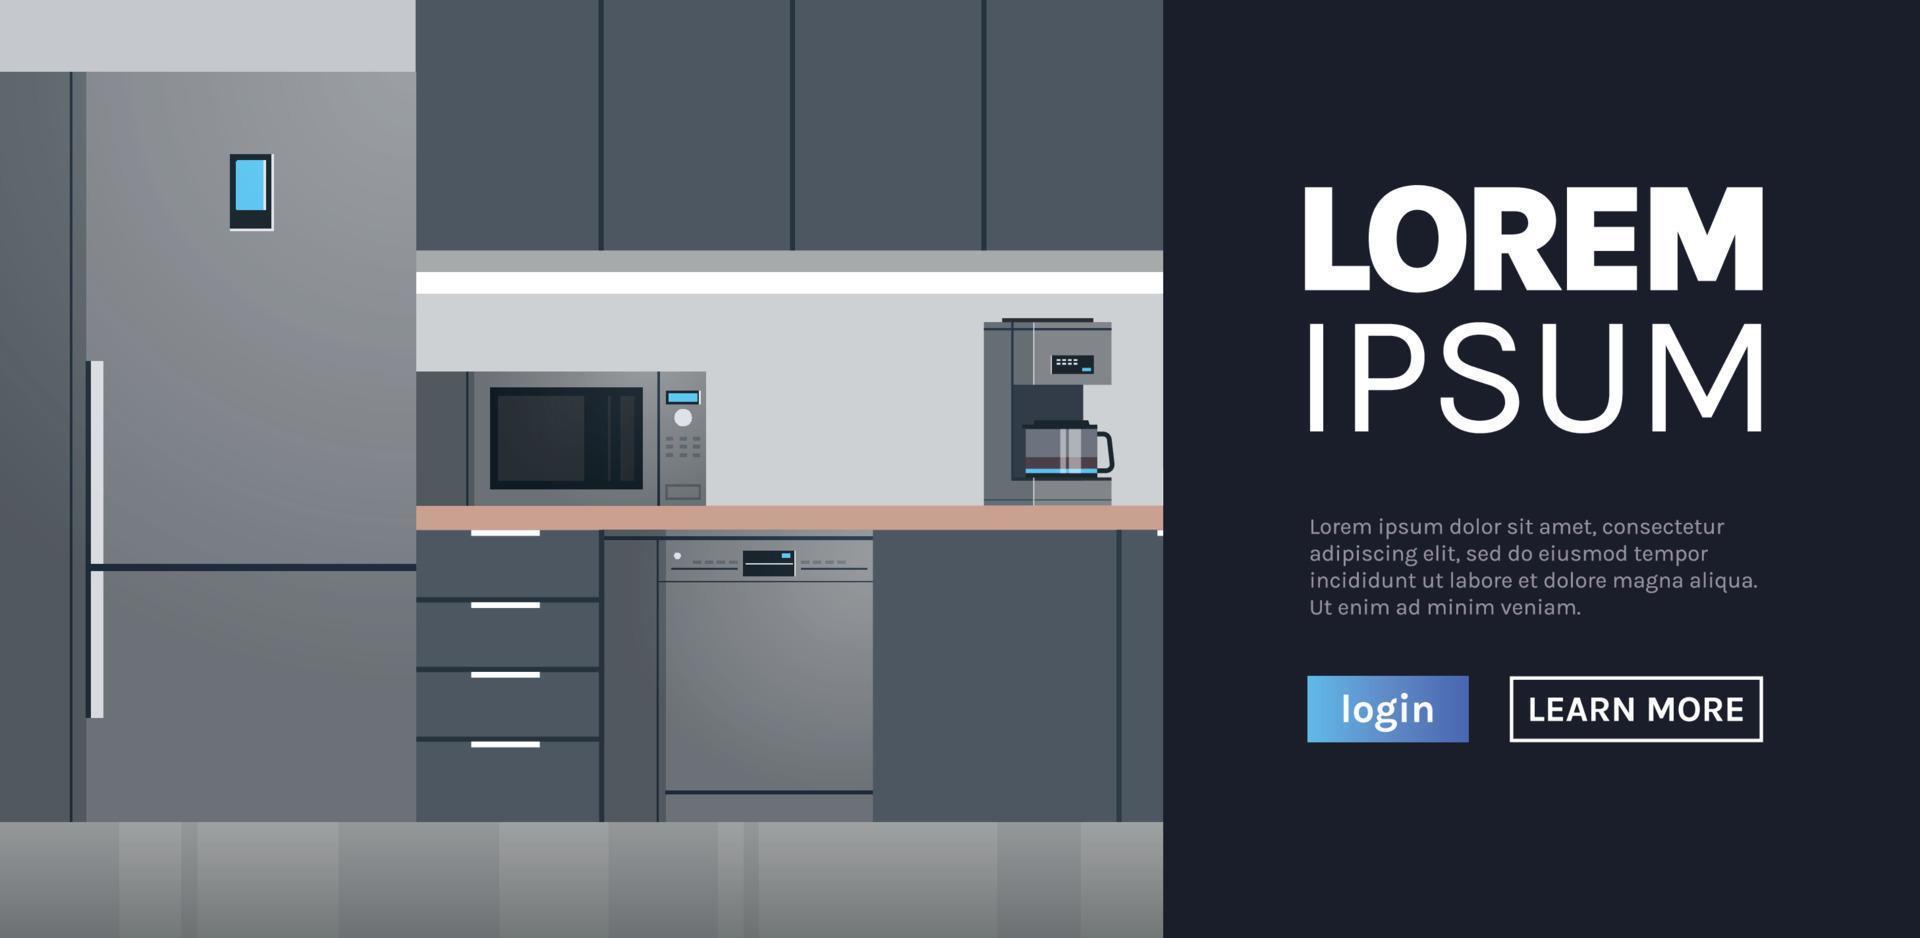 intérieur de cuisine moderne pas de personnes et d'appareils ménagers illustration de conception plate de page d'accueil web. vecteur